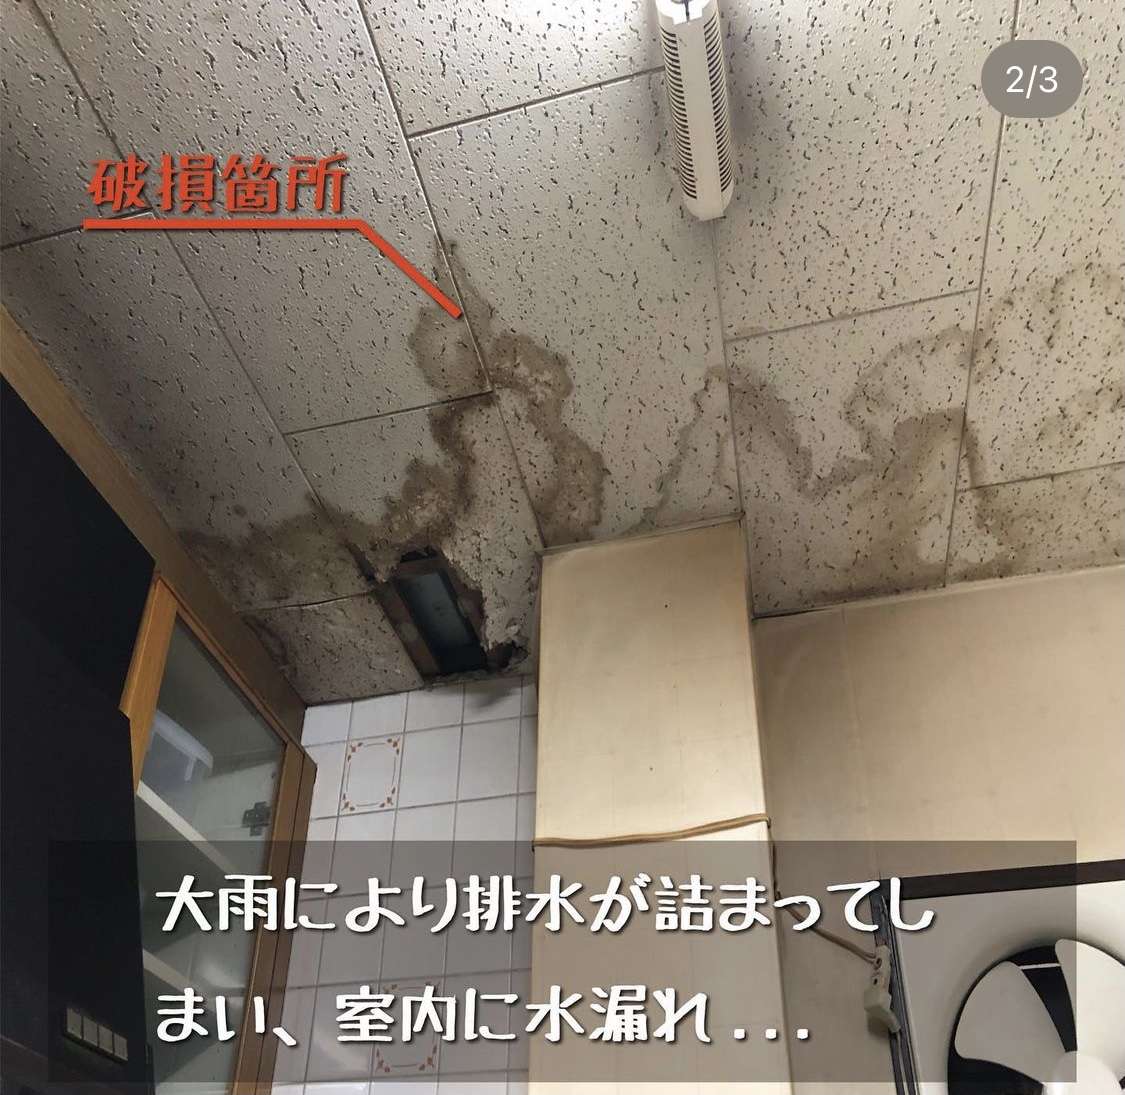 【大阪市】大雨による水漏れ被害でお困りの方は住まいるドクターへ